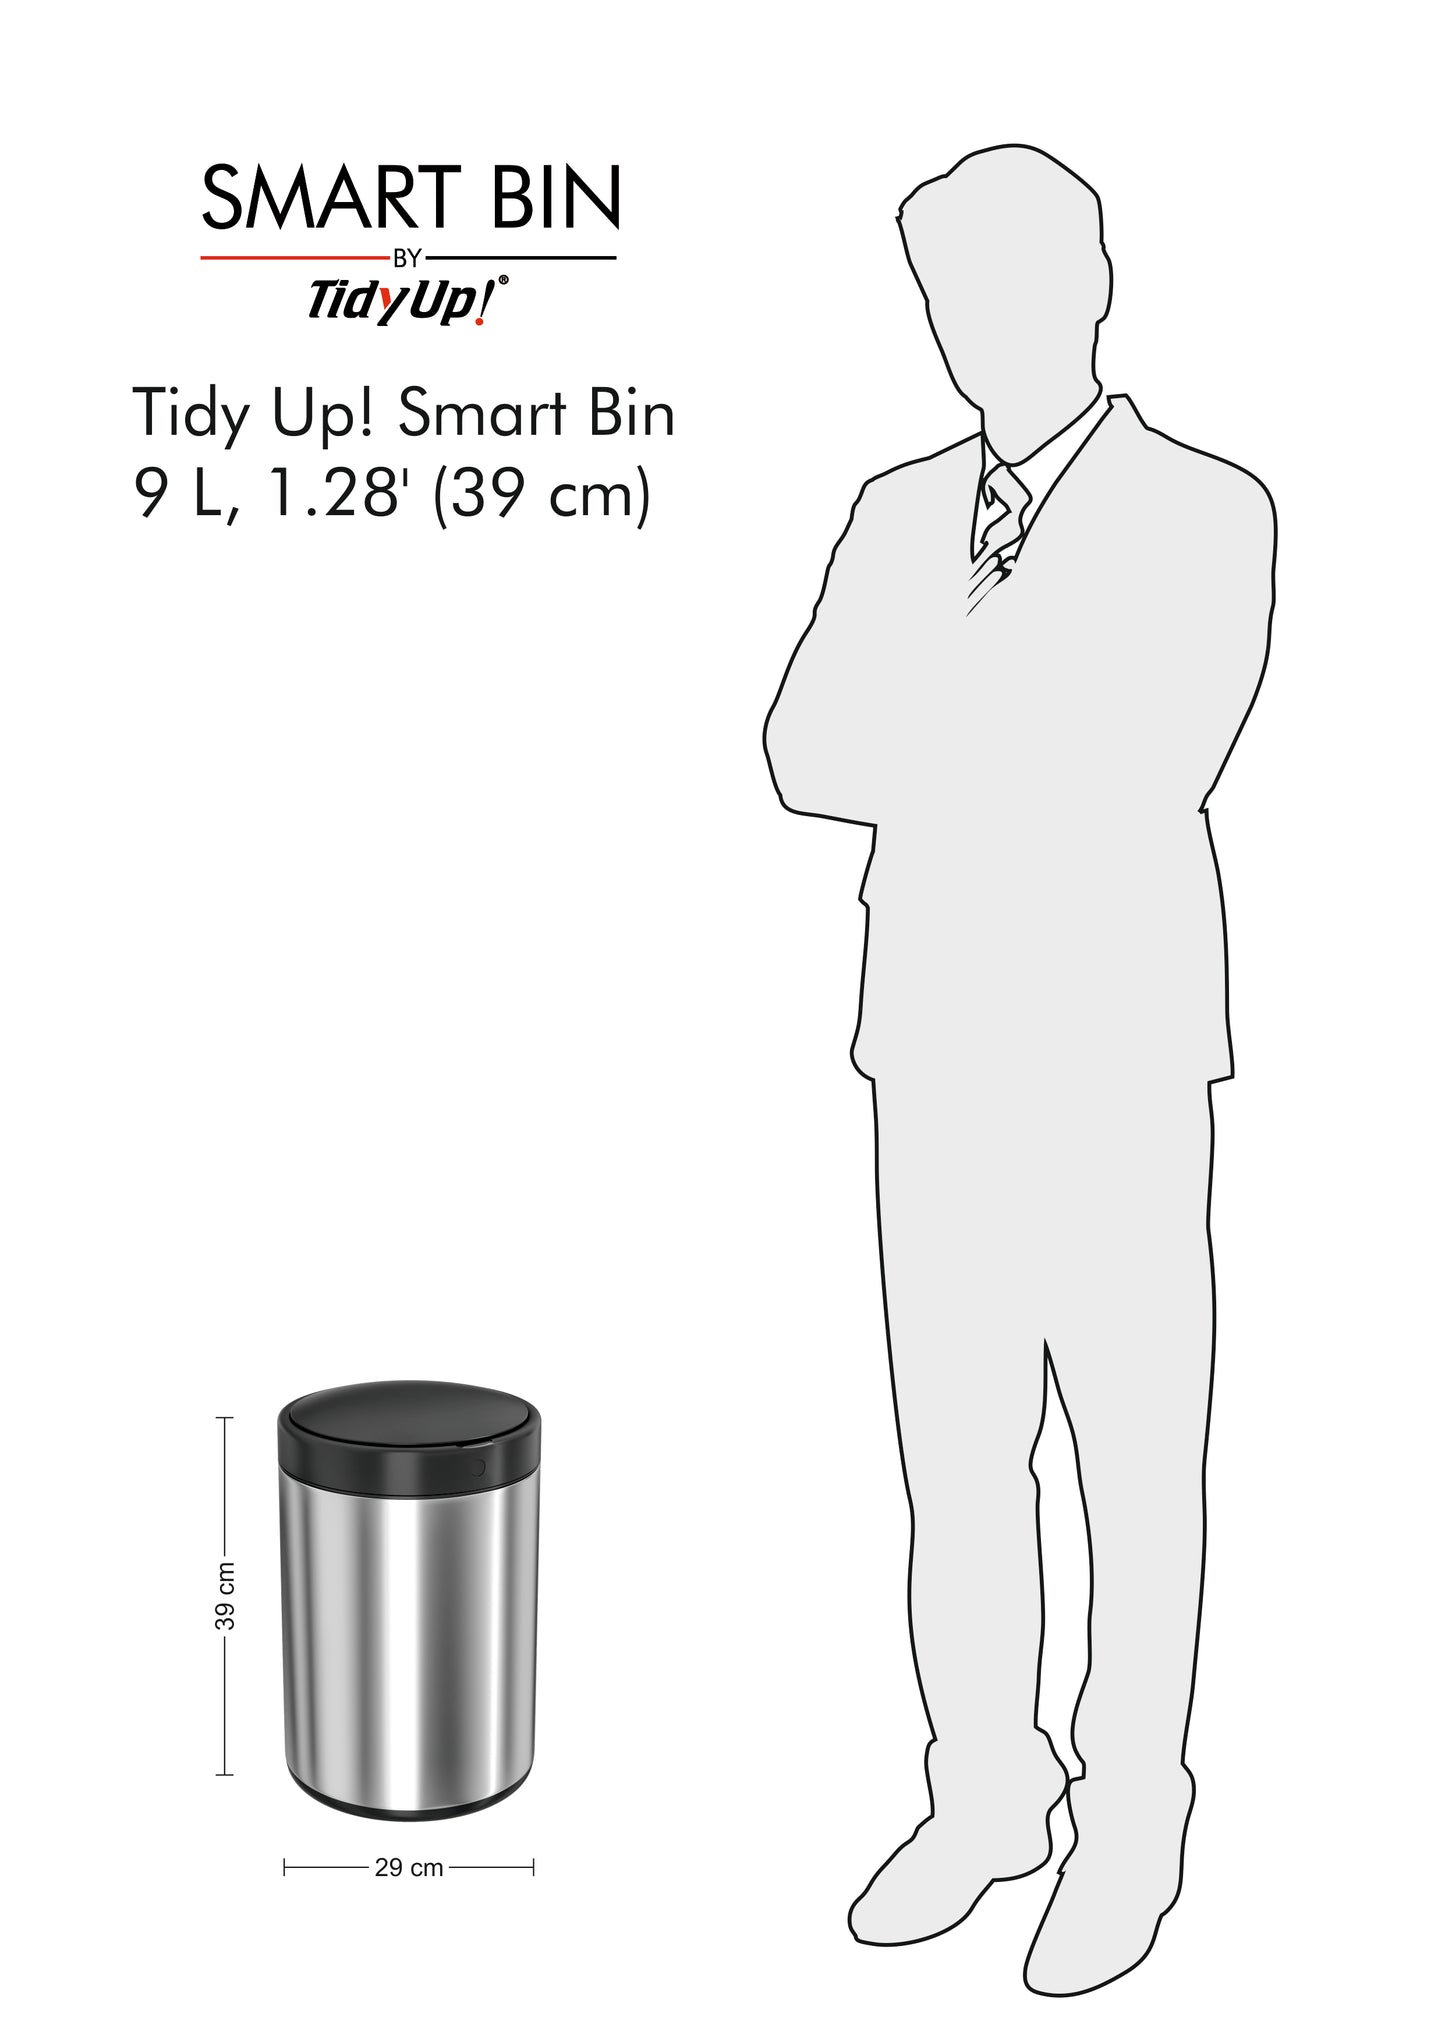 Tidy Up! Smart Bin 2 - Automatic Sensor Stainless Steel Dustbin - 9L